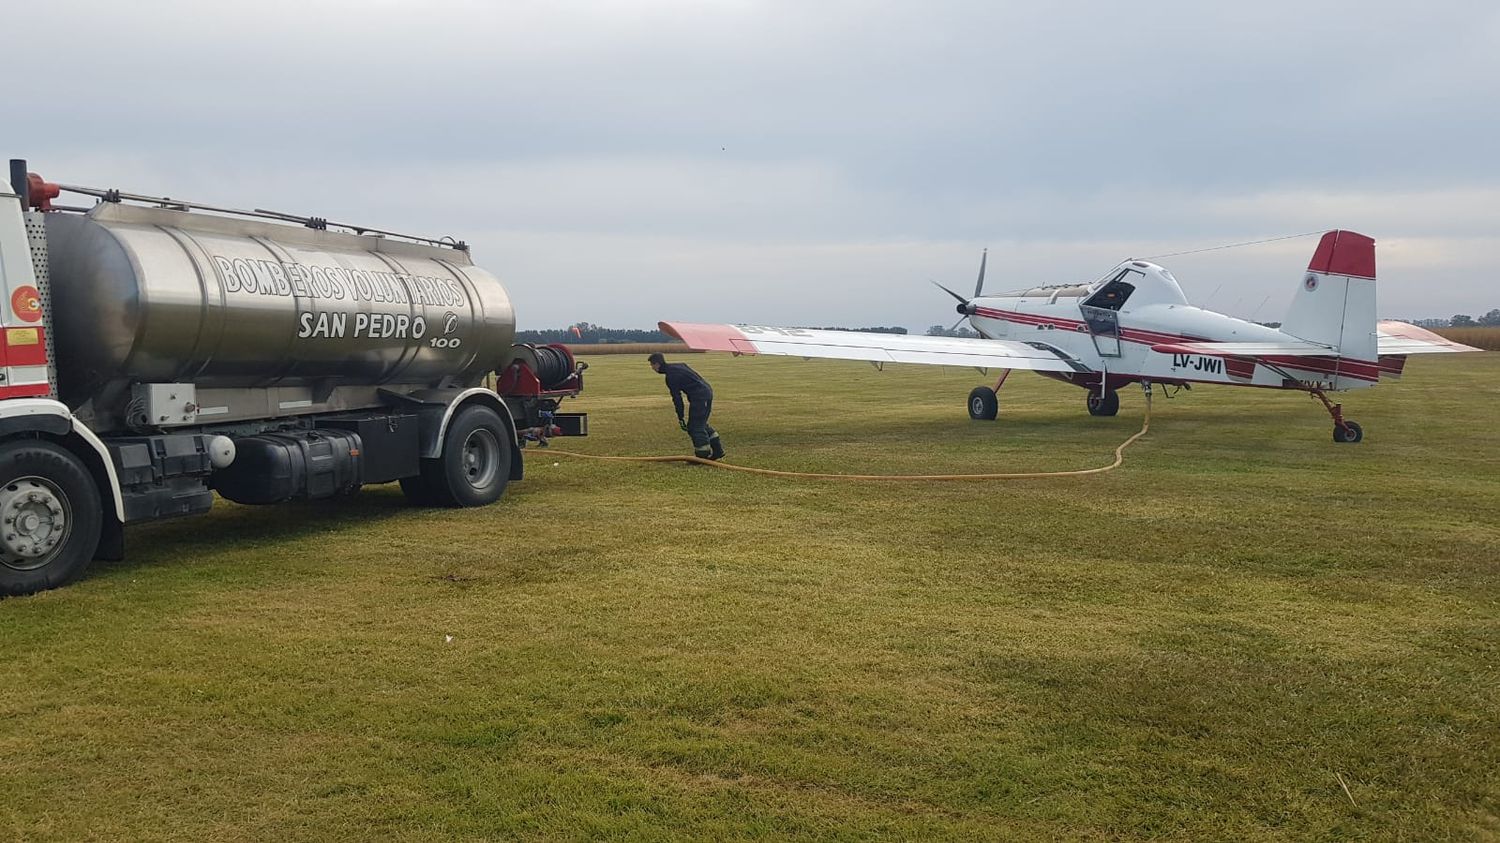 Incendio en islas: el avión hidrante y los brigadistas del Plan Nacional de Manejo del Fuego trabajan en San Pedro